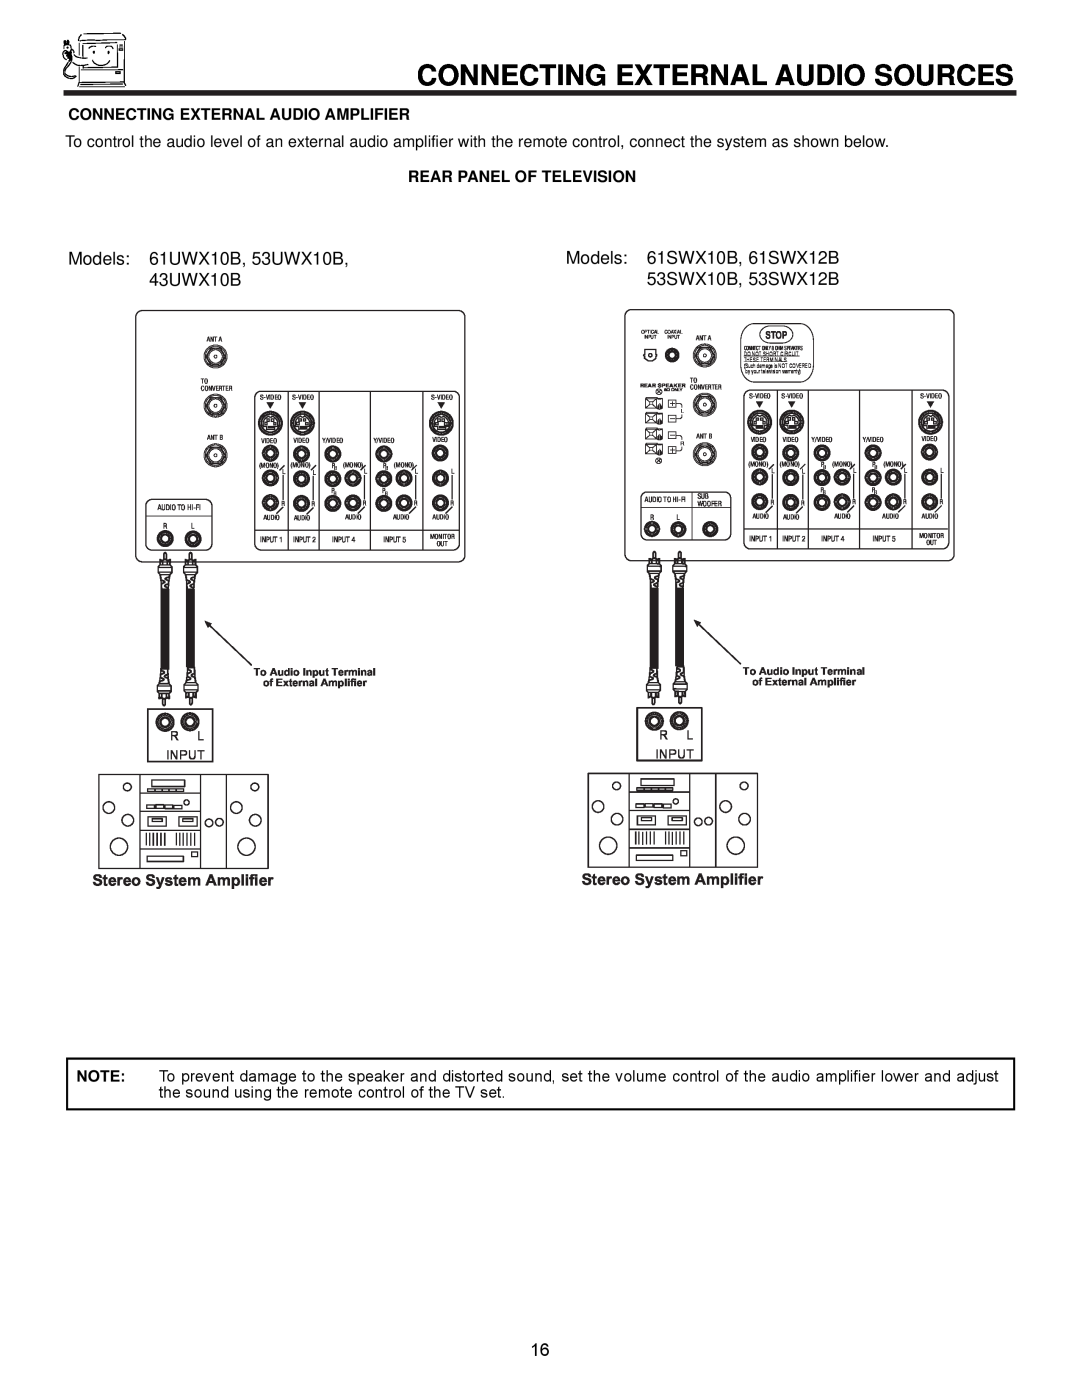 Hitachi Connecting External Audio Sources, Models 61UWX10B, 53UWX10B, 43UWX10B, Connecting External Audio Amplifier 